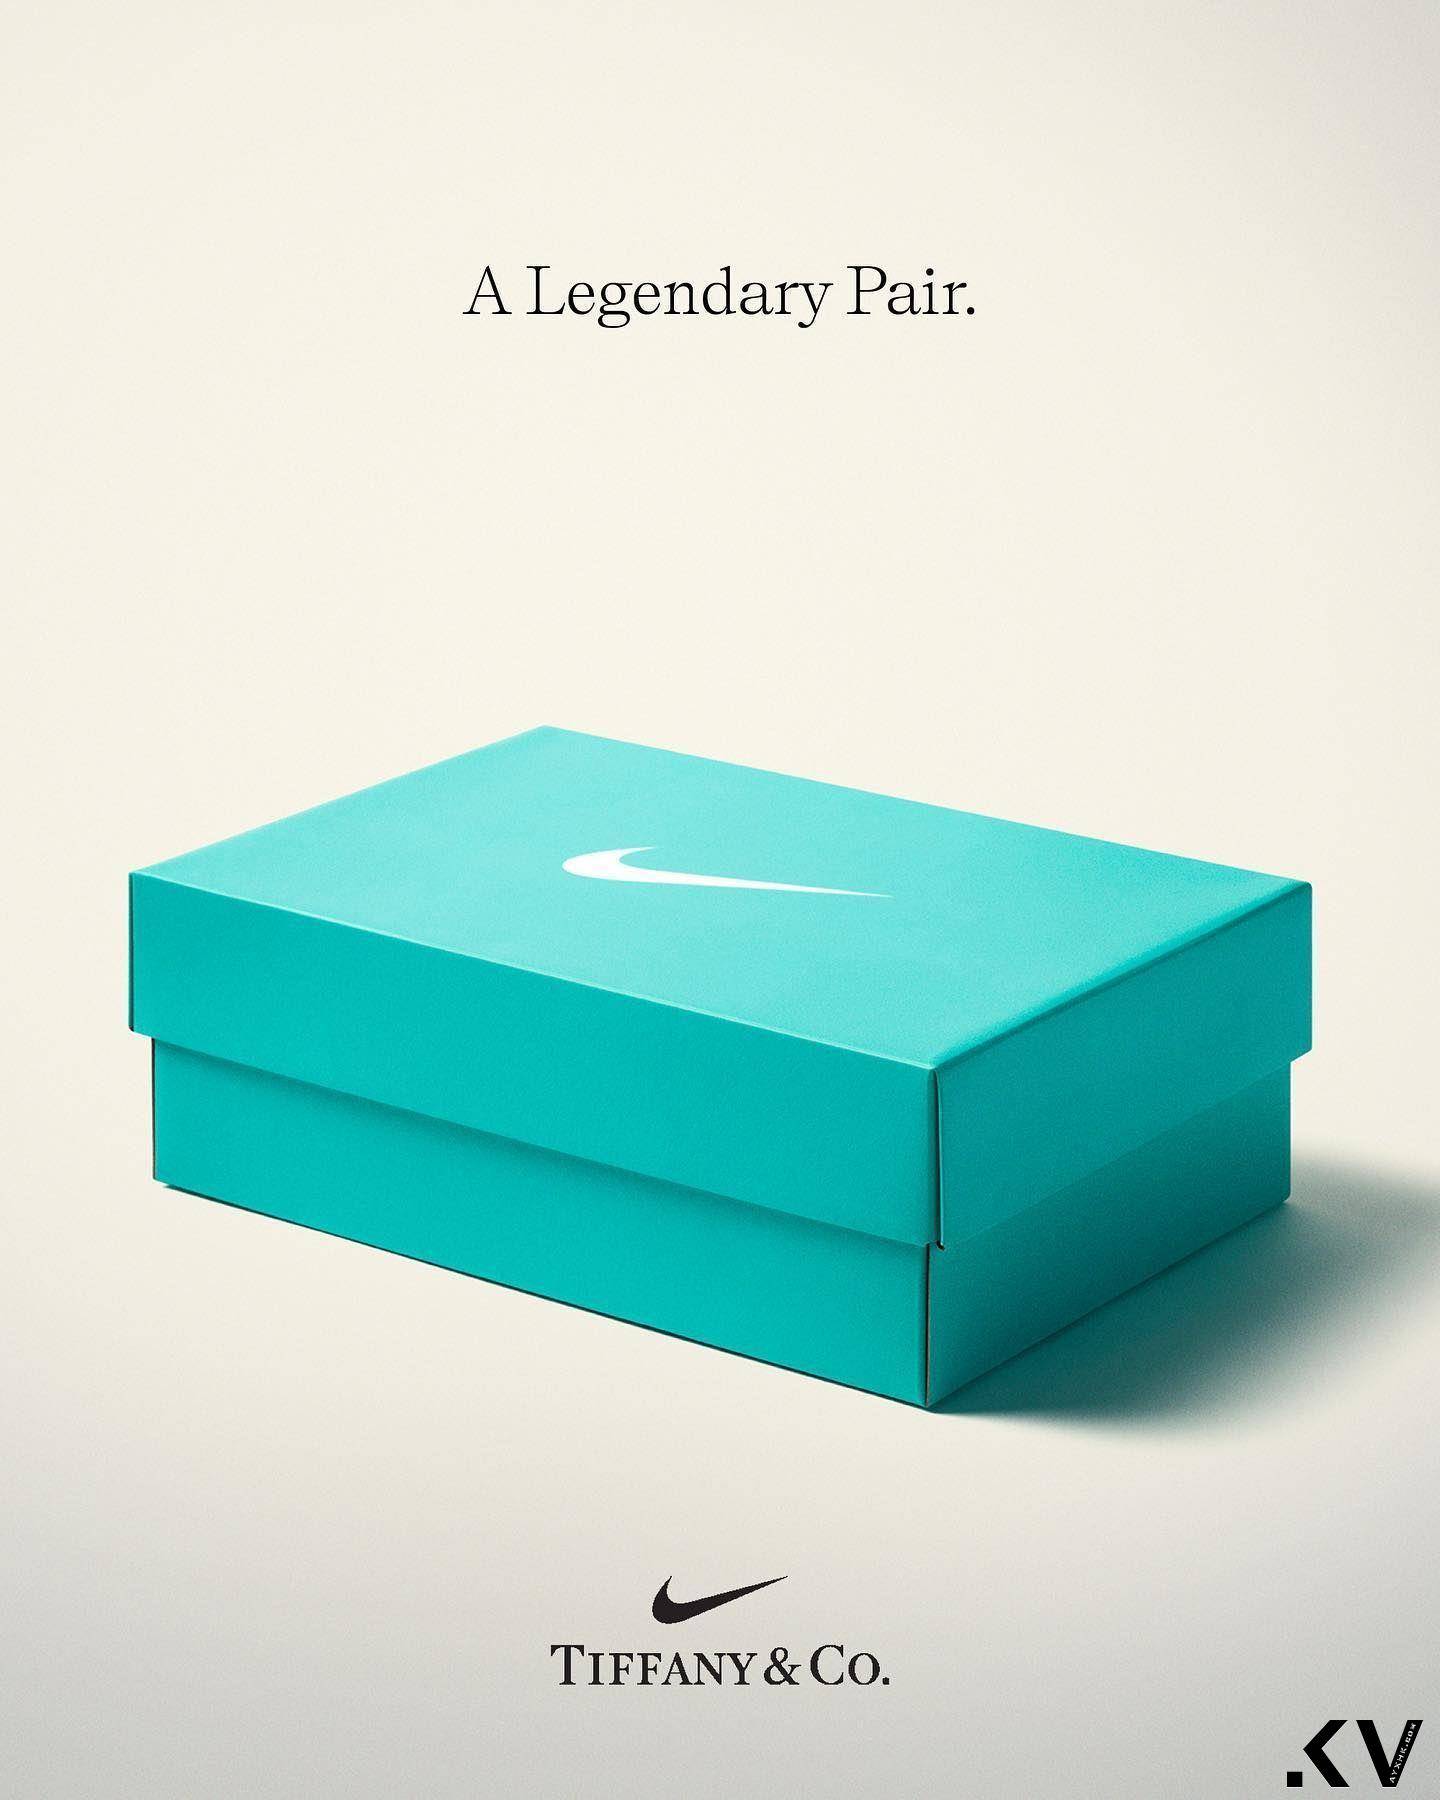 Tiffany联名Nike出鞋刷！　网炸锅大骂“天大笑话” 奢侈品牌 图5张